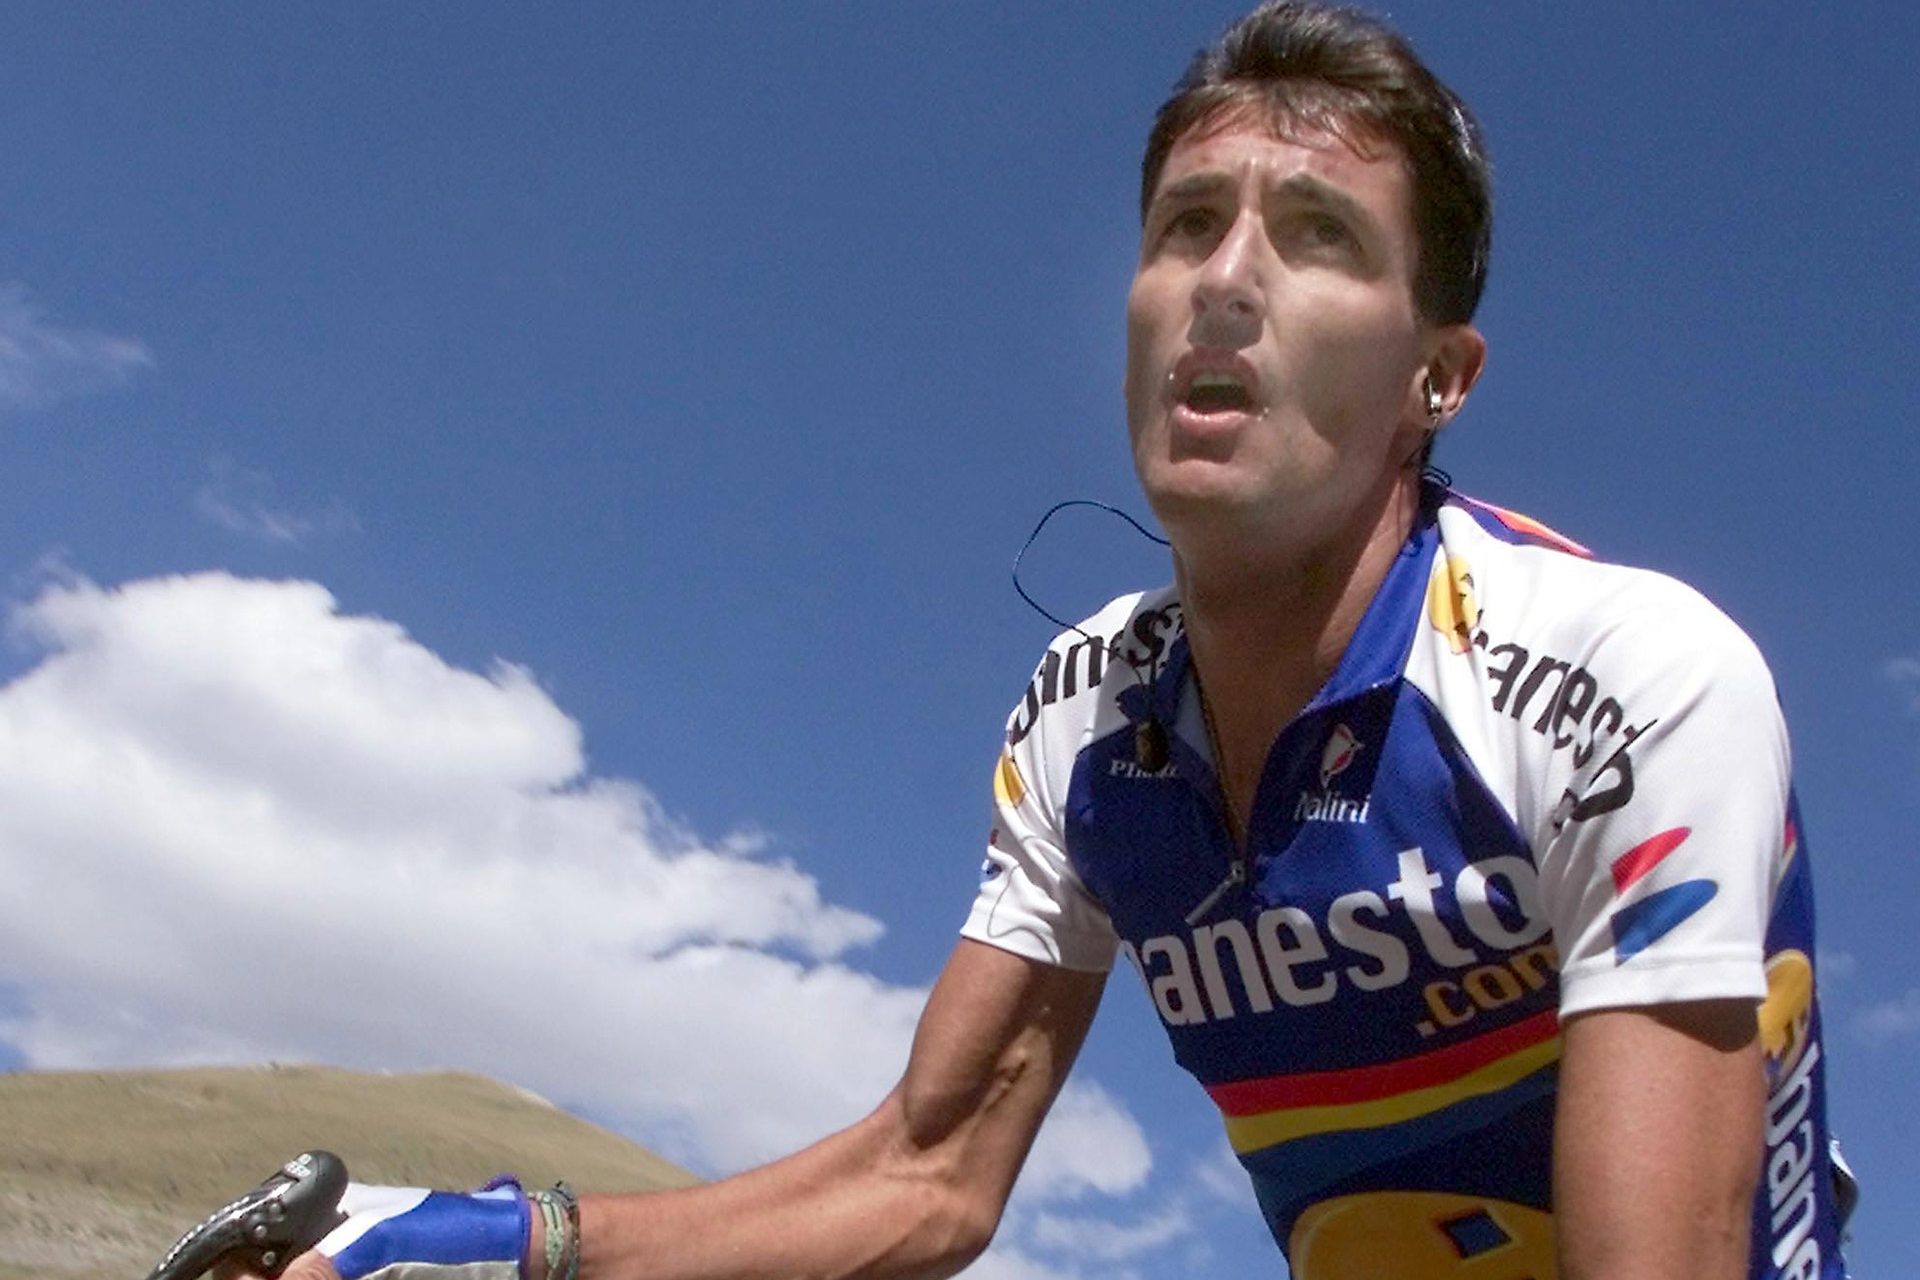 <p>Los problemas para el ‘Chava’ llegaron tras la Vuelta a España del año 2001, en la que consiguió ganar tres etapas y liderar las clasificaciones por puntos y de la montaña pero, tras la cual, nunca volvió a competir profesionalmente. Fue entonces cuando aparecieron una serie de problemas psicológicos que lo sumieron en la depresión.</p>